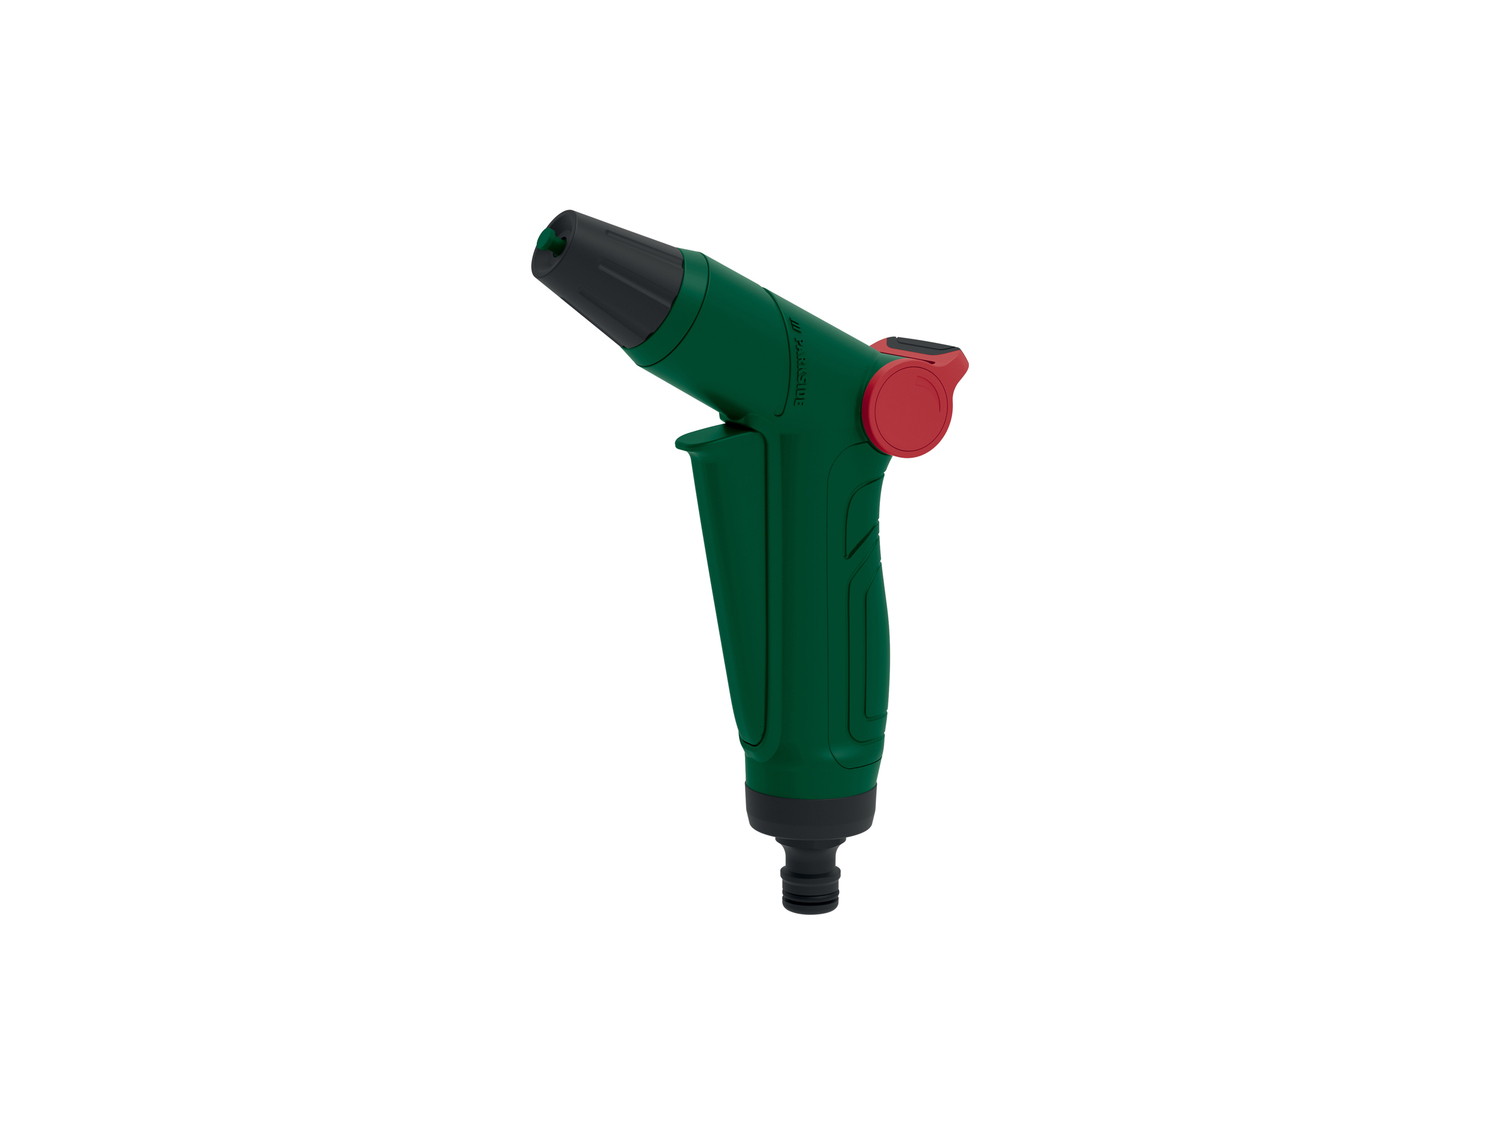 Doccetta o pistola per irrigazione Parkside, prezzo 4.99 &#8364; 
- Click System
- ...